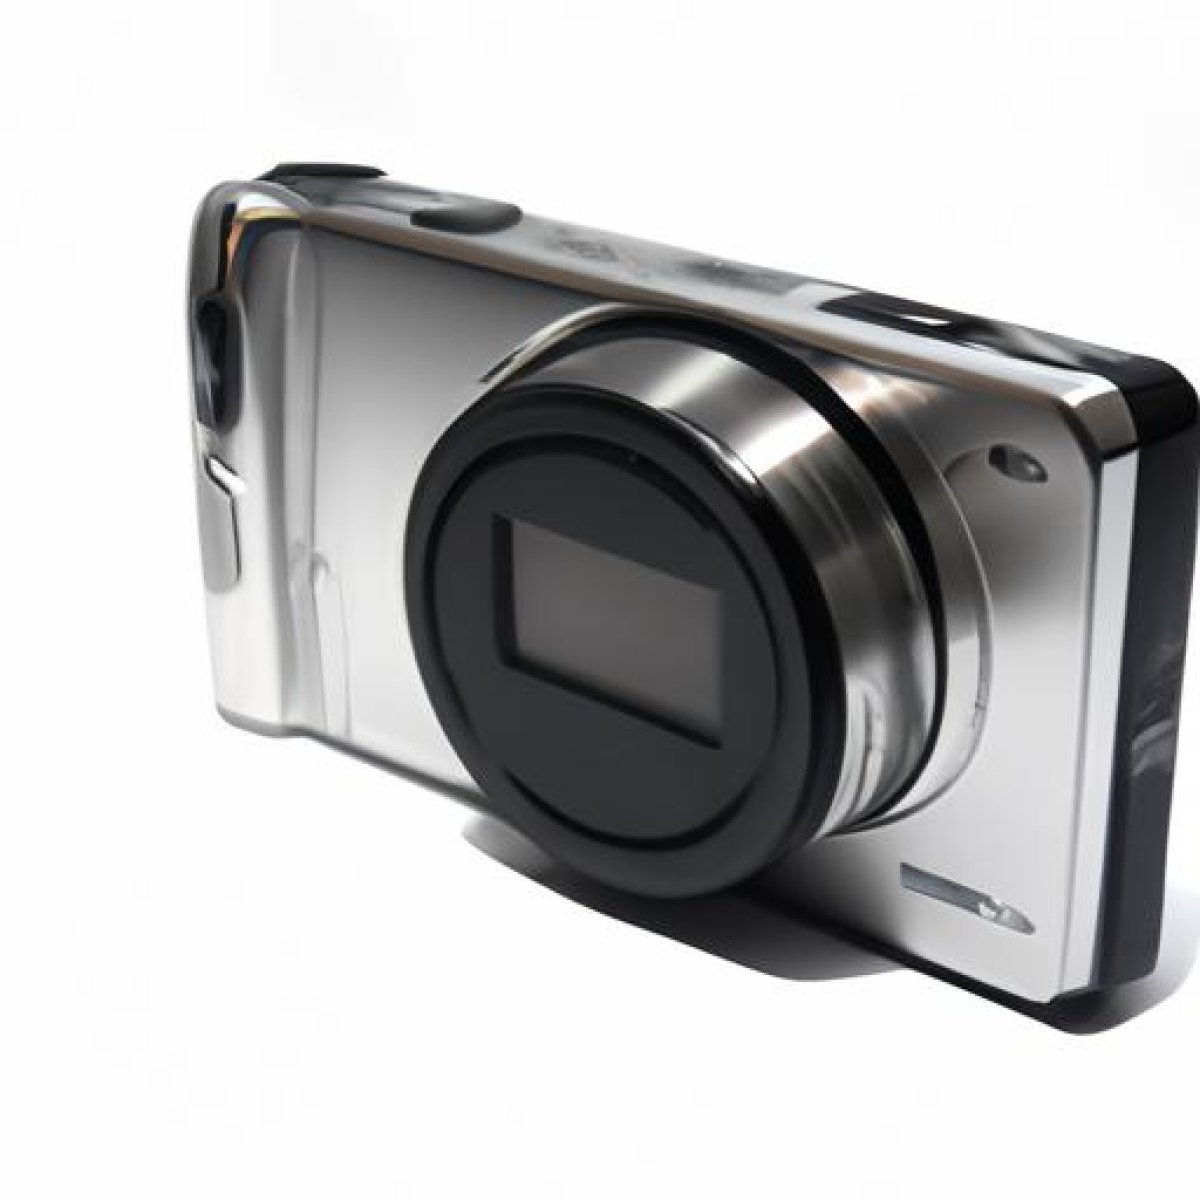 Sony dsc w830 digital camera